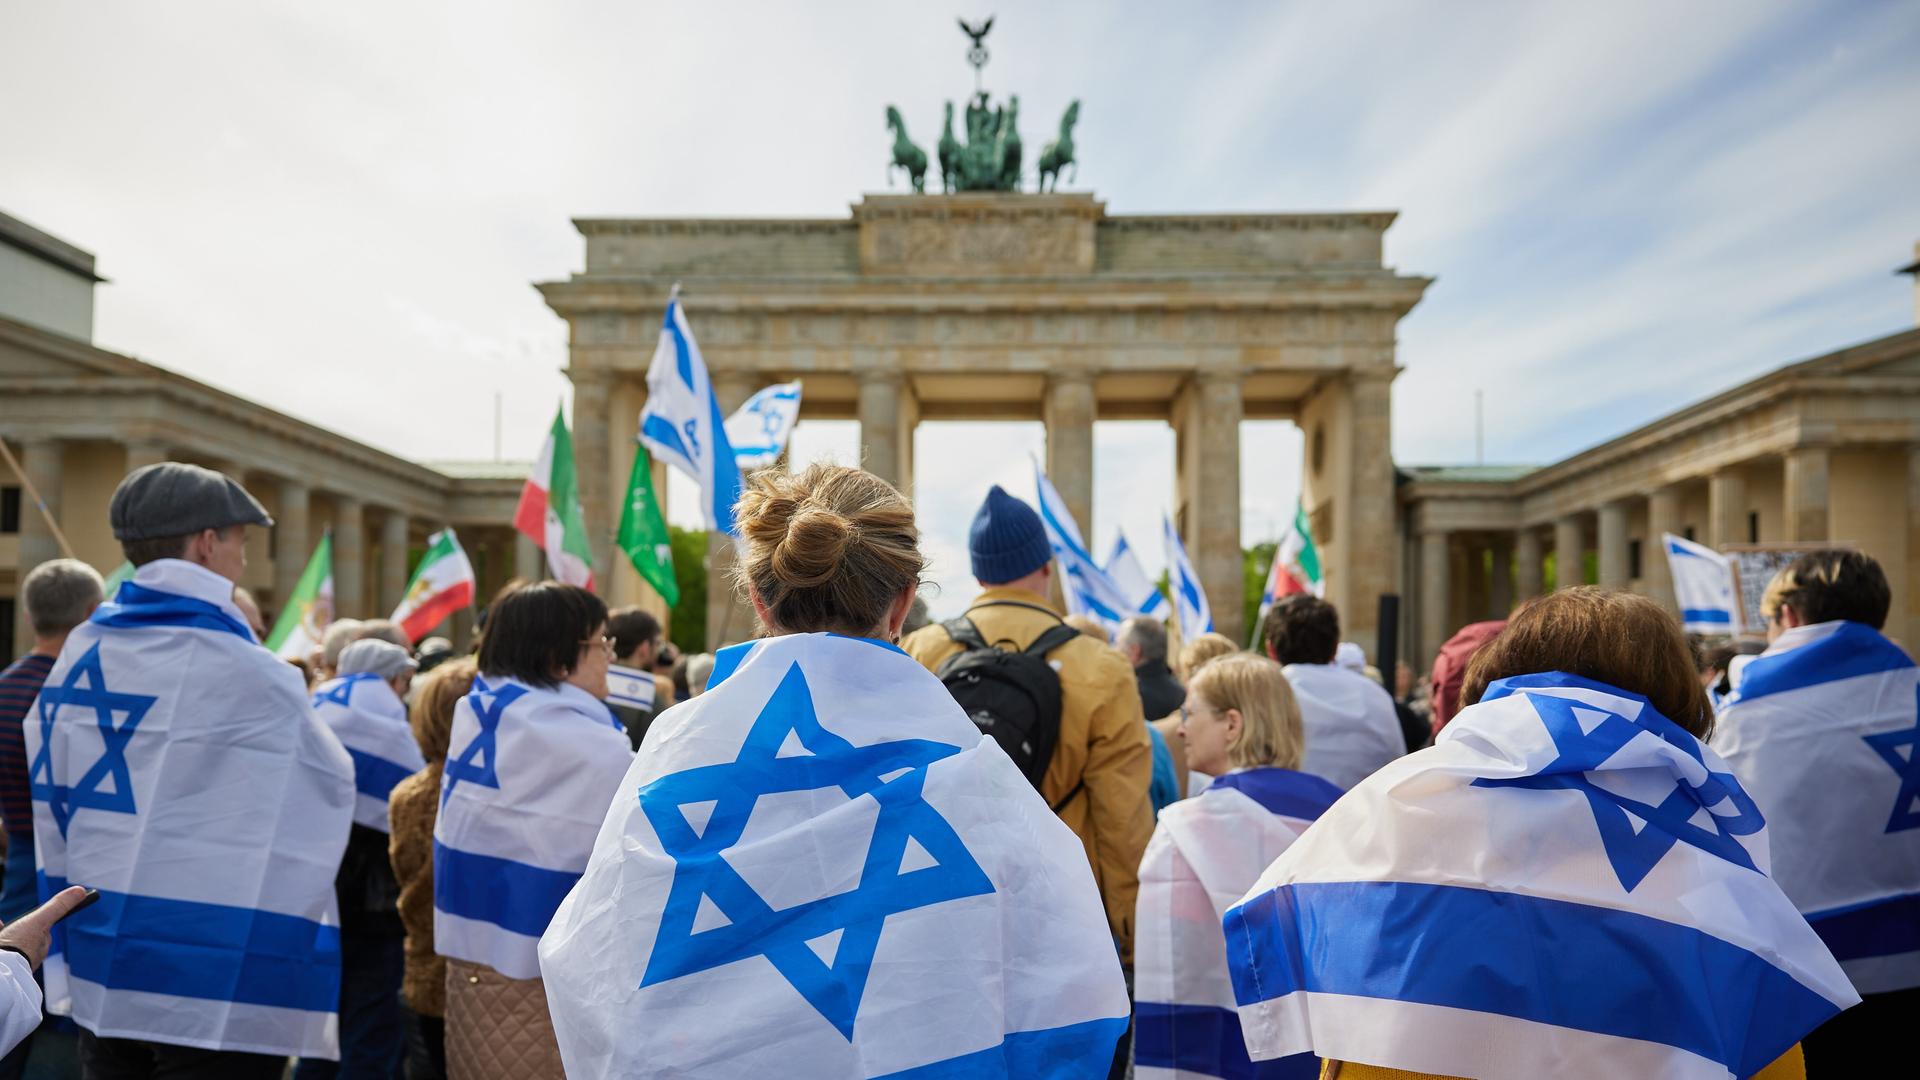 Eine Solidaritätsdemonstration der Deutsch-Israelischen Gesellschaft mit Israelfahnen vor dem Brandenburger Tor in berlin.